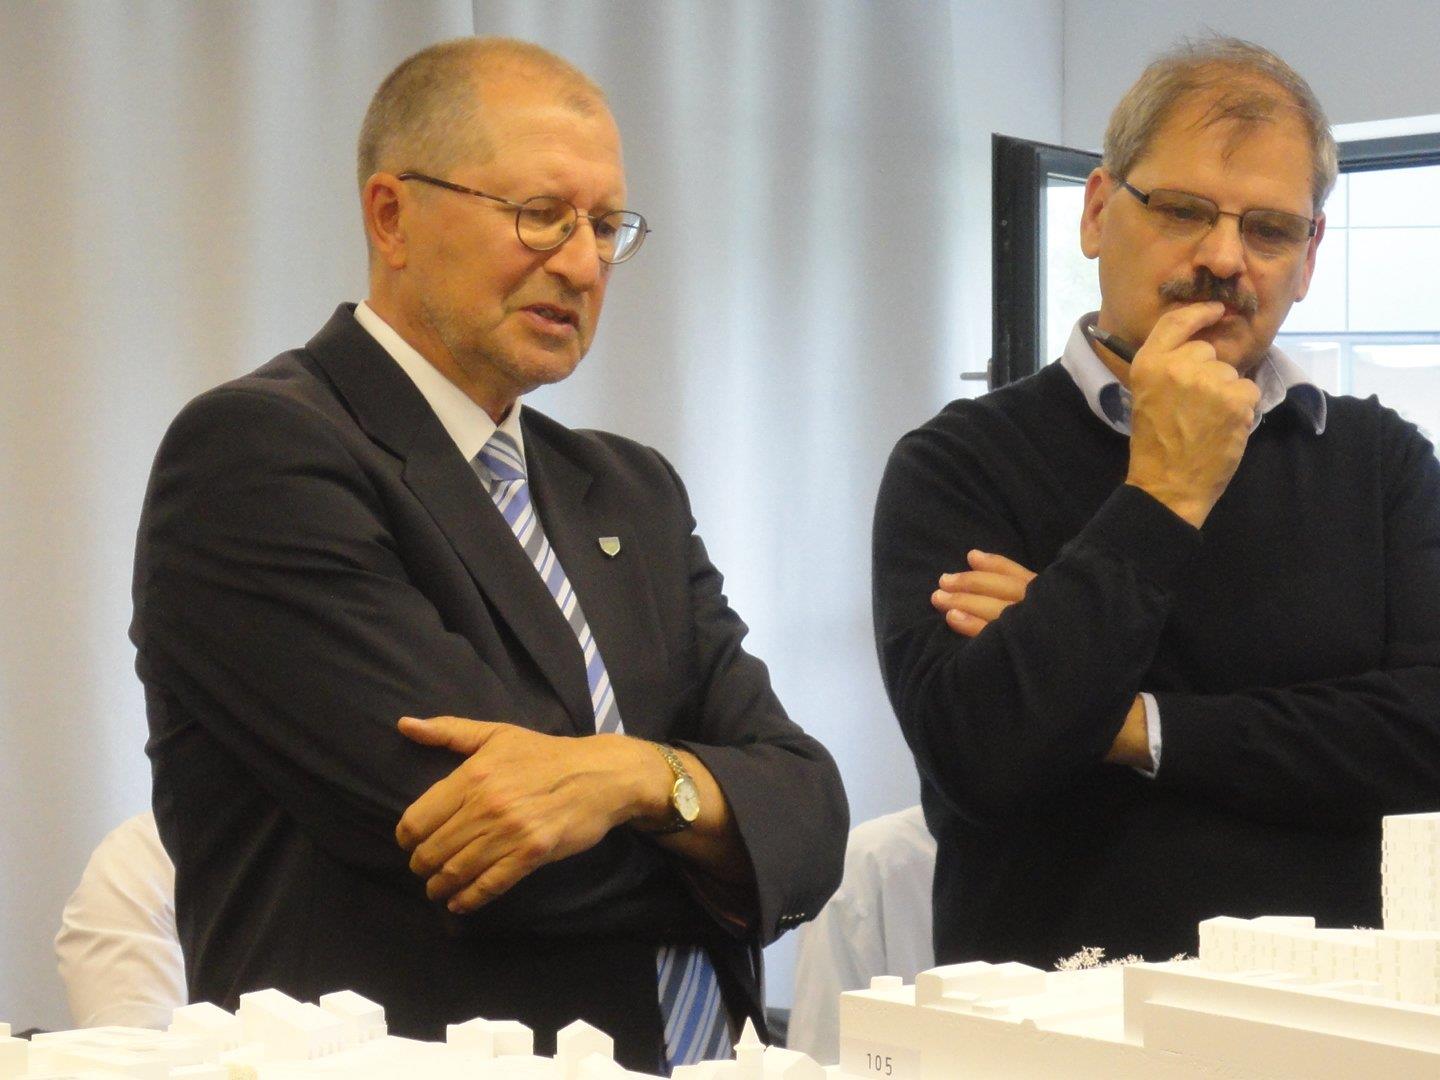 Oberbürgermeister Dr. Gerhard Ecker und der Juryvorsitzende Werner Binotto, Architekt und Kantonsbaumeister St. Gallen, bei der Begutachtung der eingereichten städtebaulichen Entwürfe.